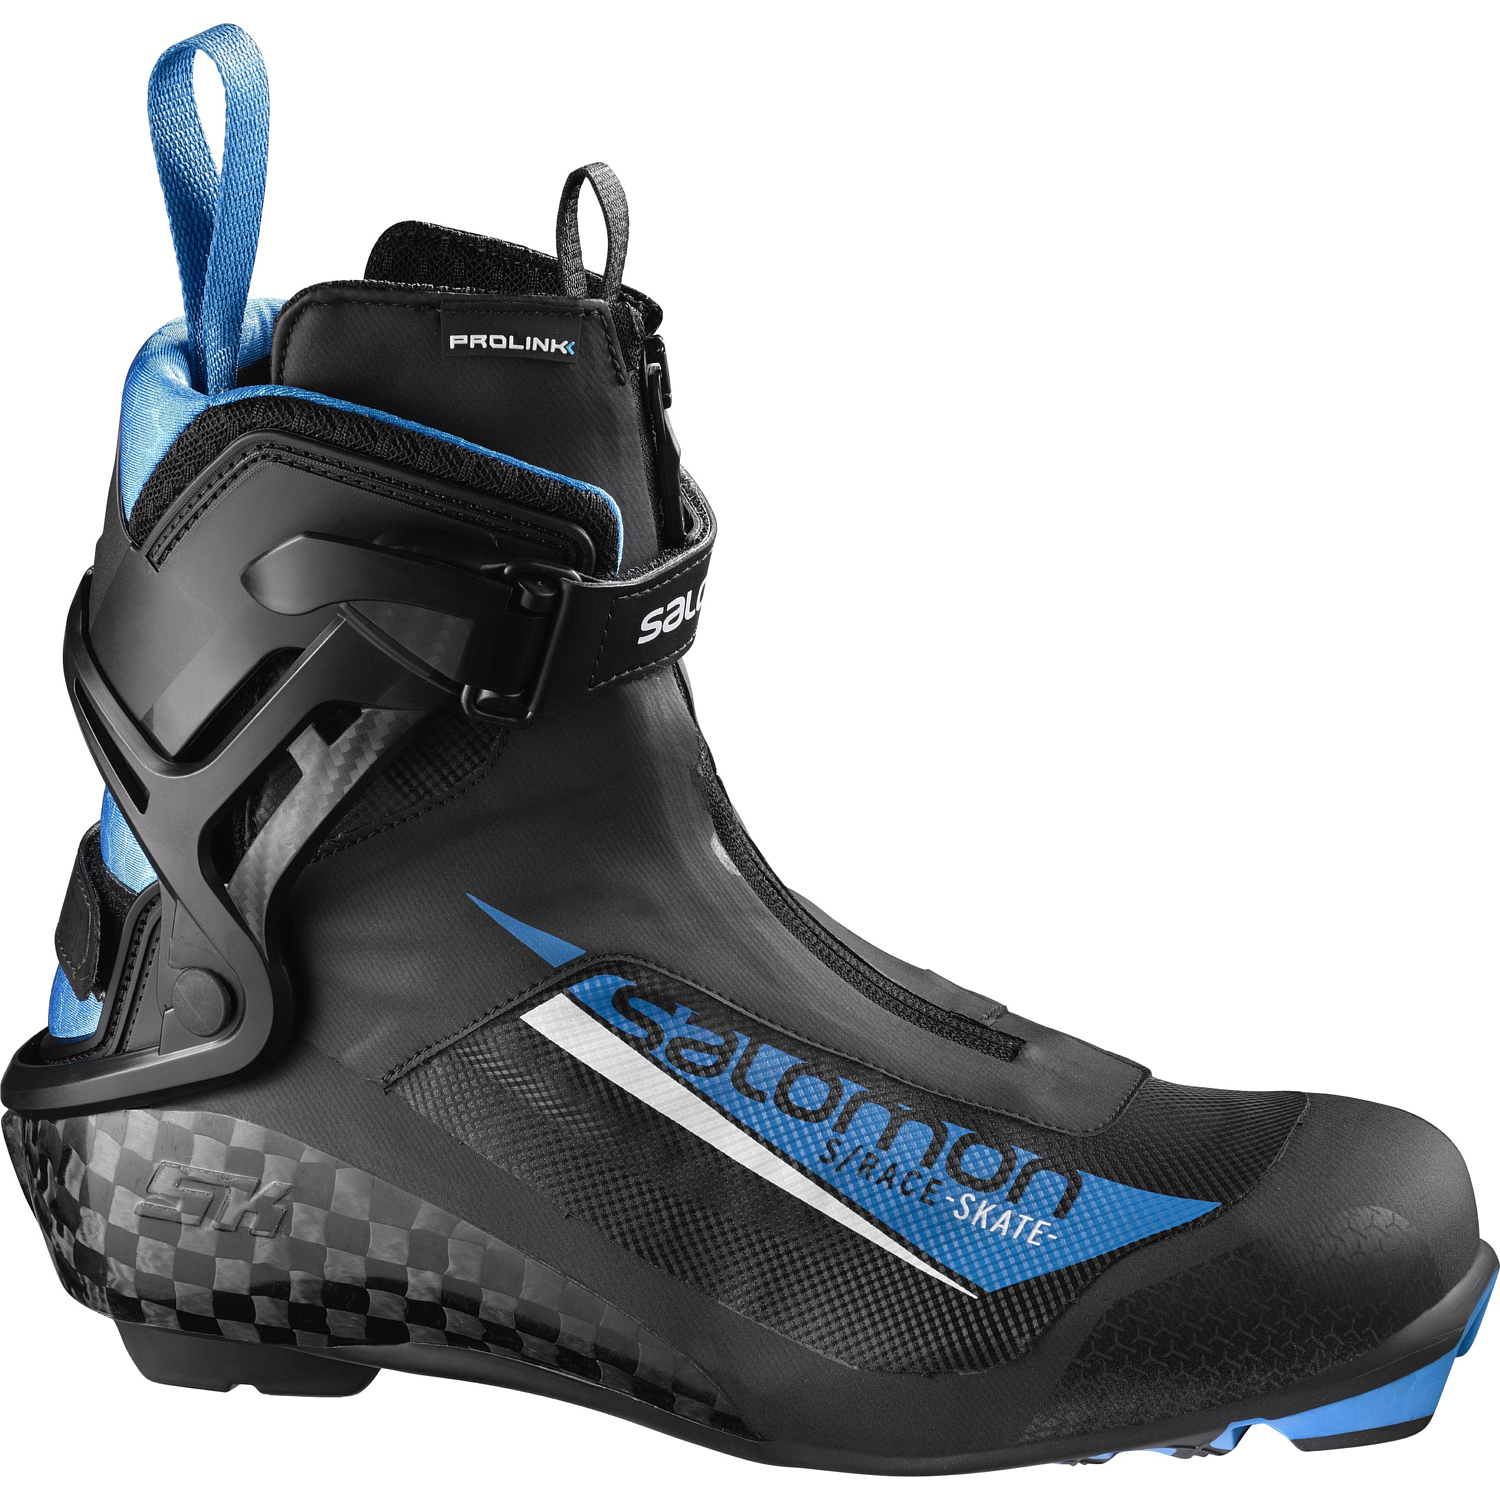 Лыжные ботинки SALOMON 2018-19 XC shoes S/race skate Prolink